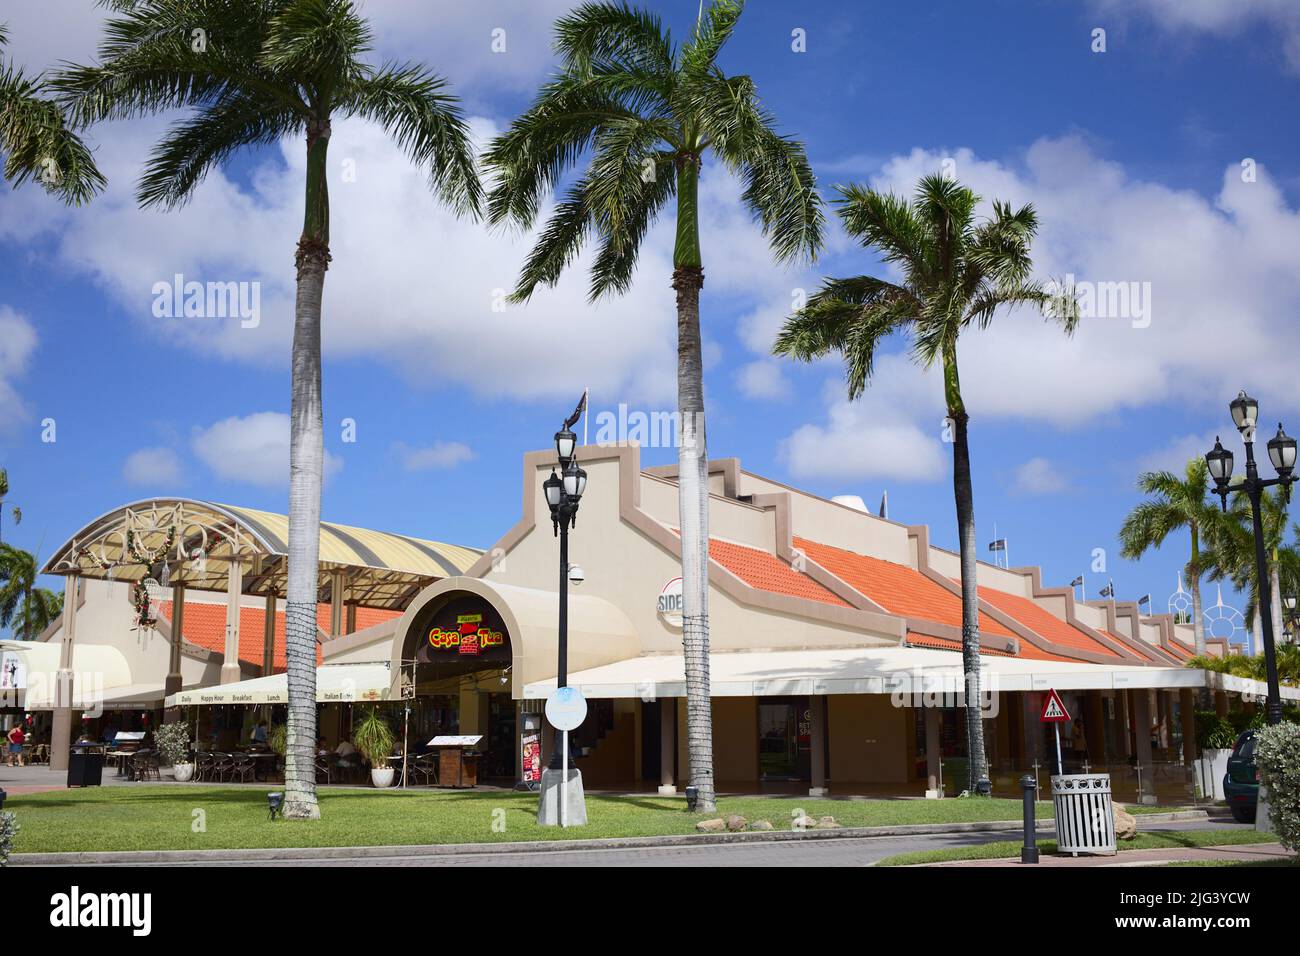 Renaissance Mall reviews, photos - Oranjestad - Aruba - GayCities